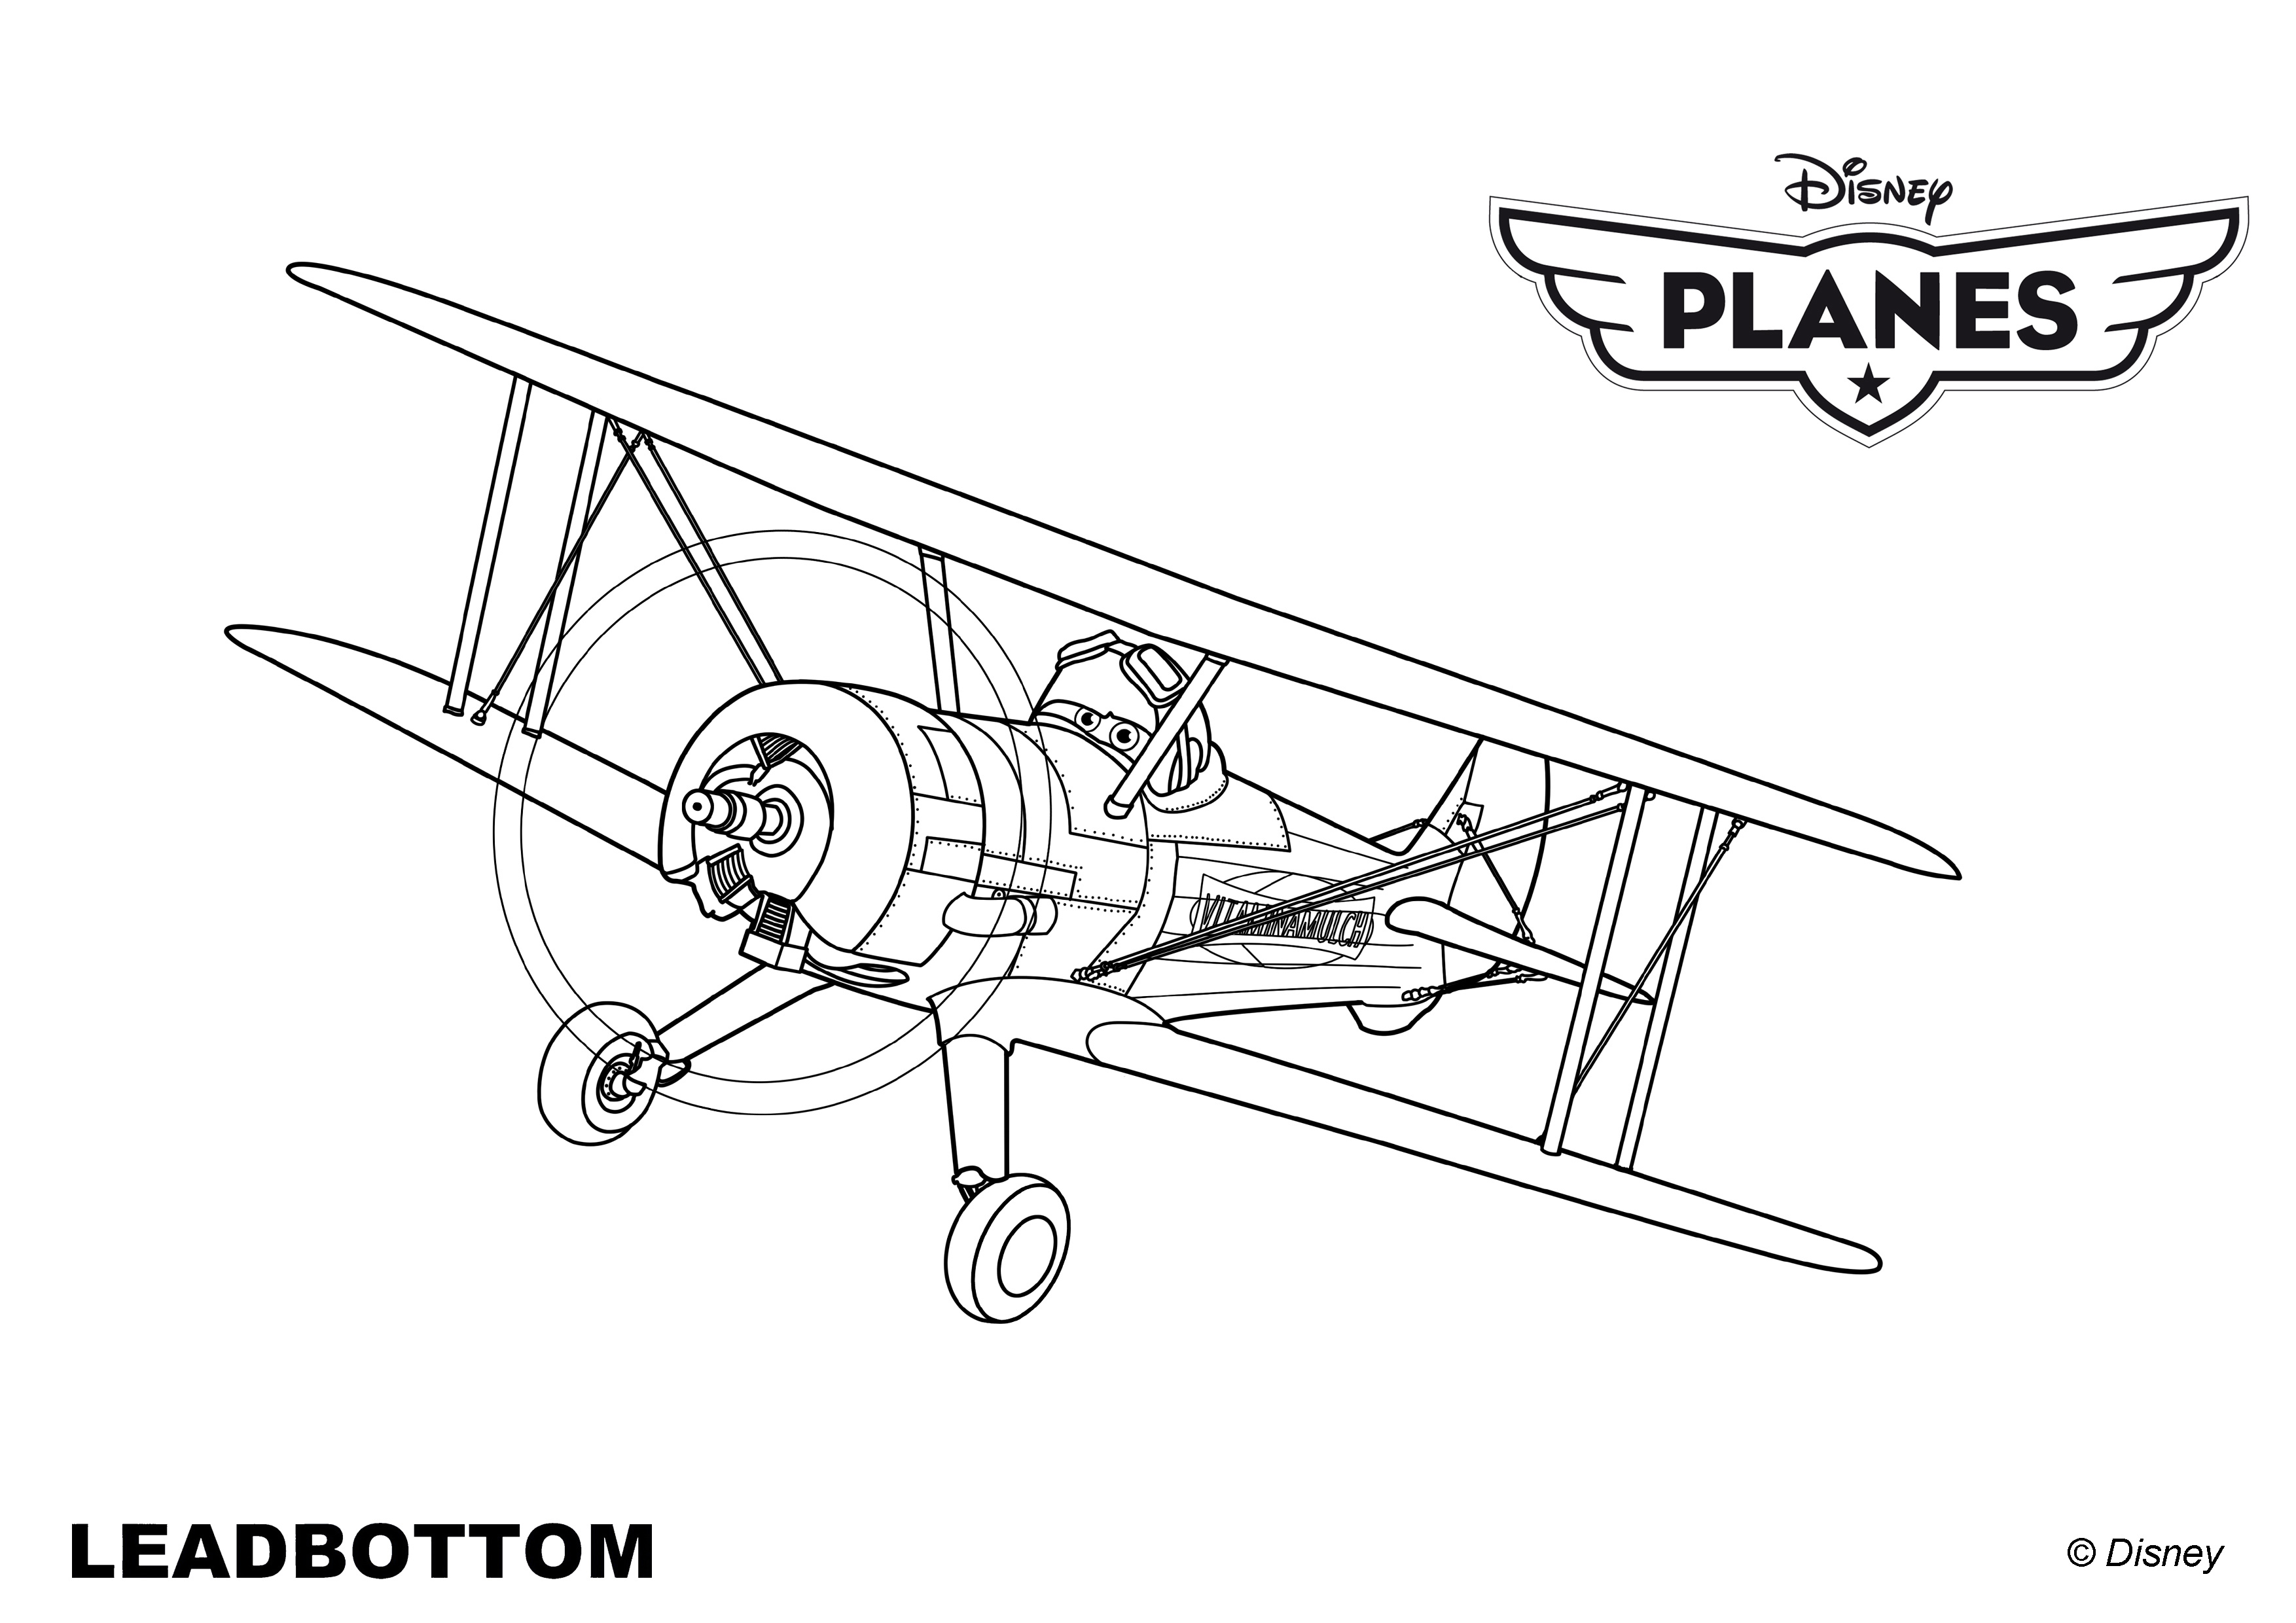 Coloriages Planes de walt Disney,Leadbottom, un vieux biplan a ...